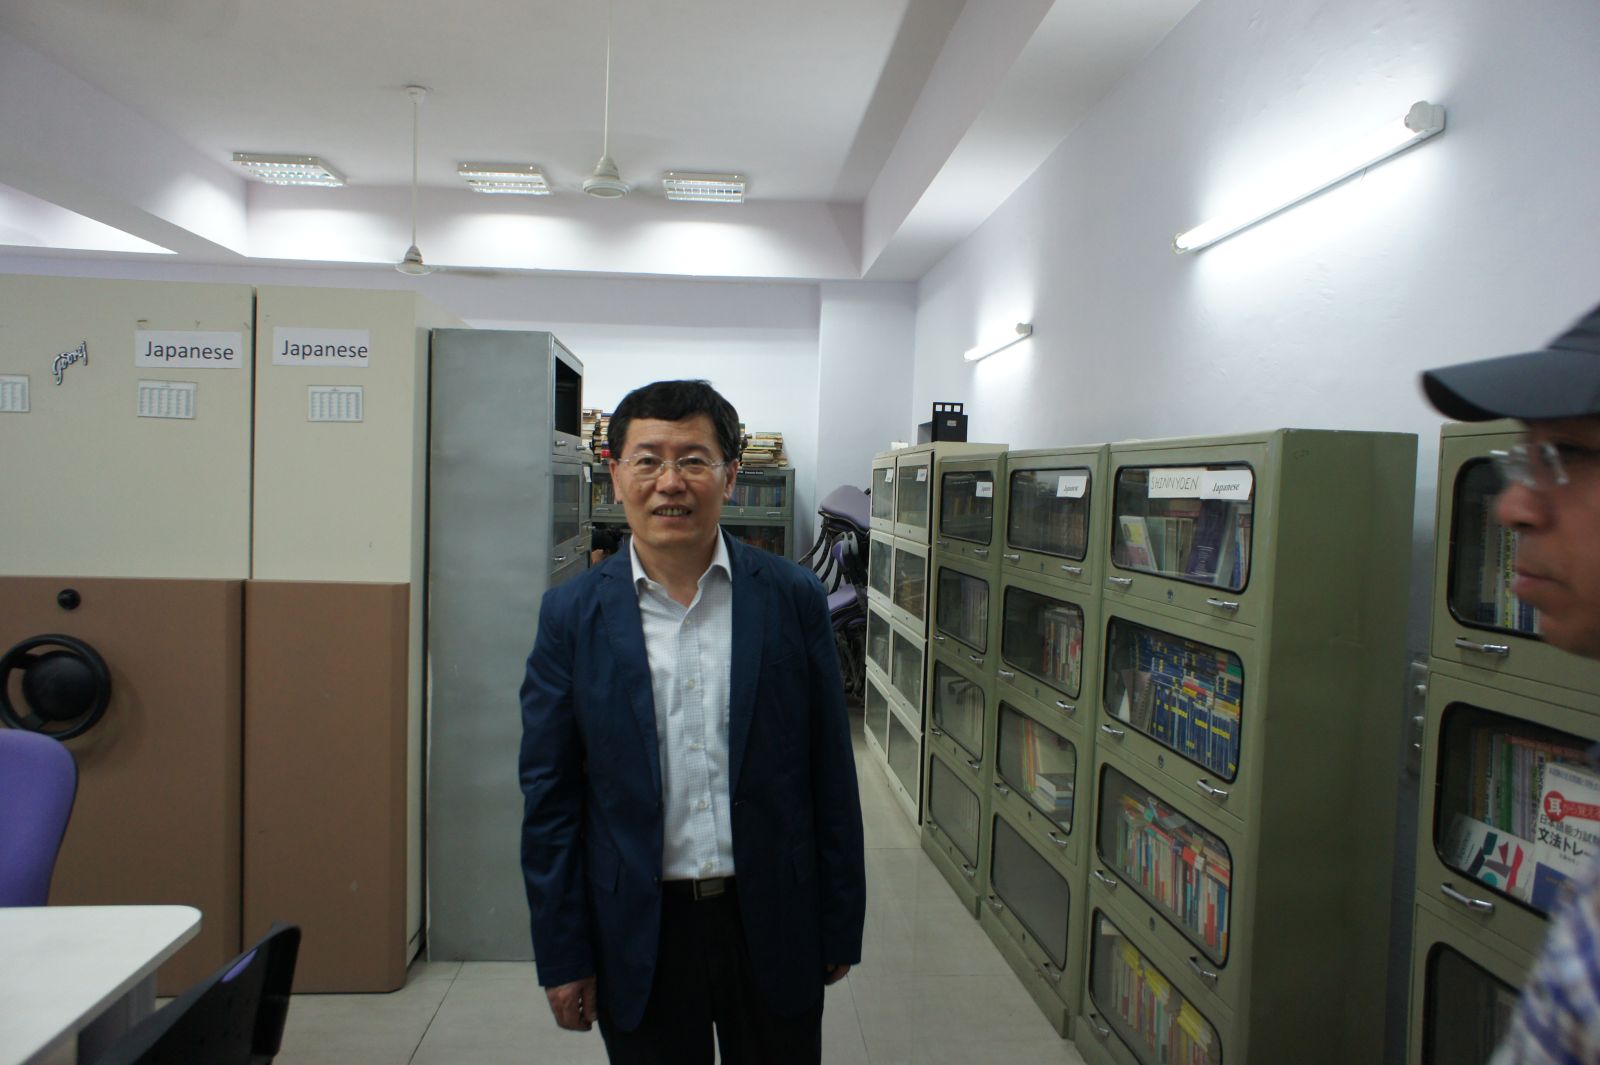 尹虎彬副所长在参观尼赫鲁大学东亚研究中心图书馆